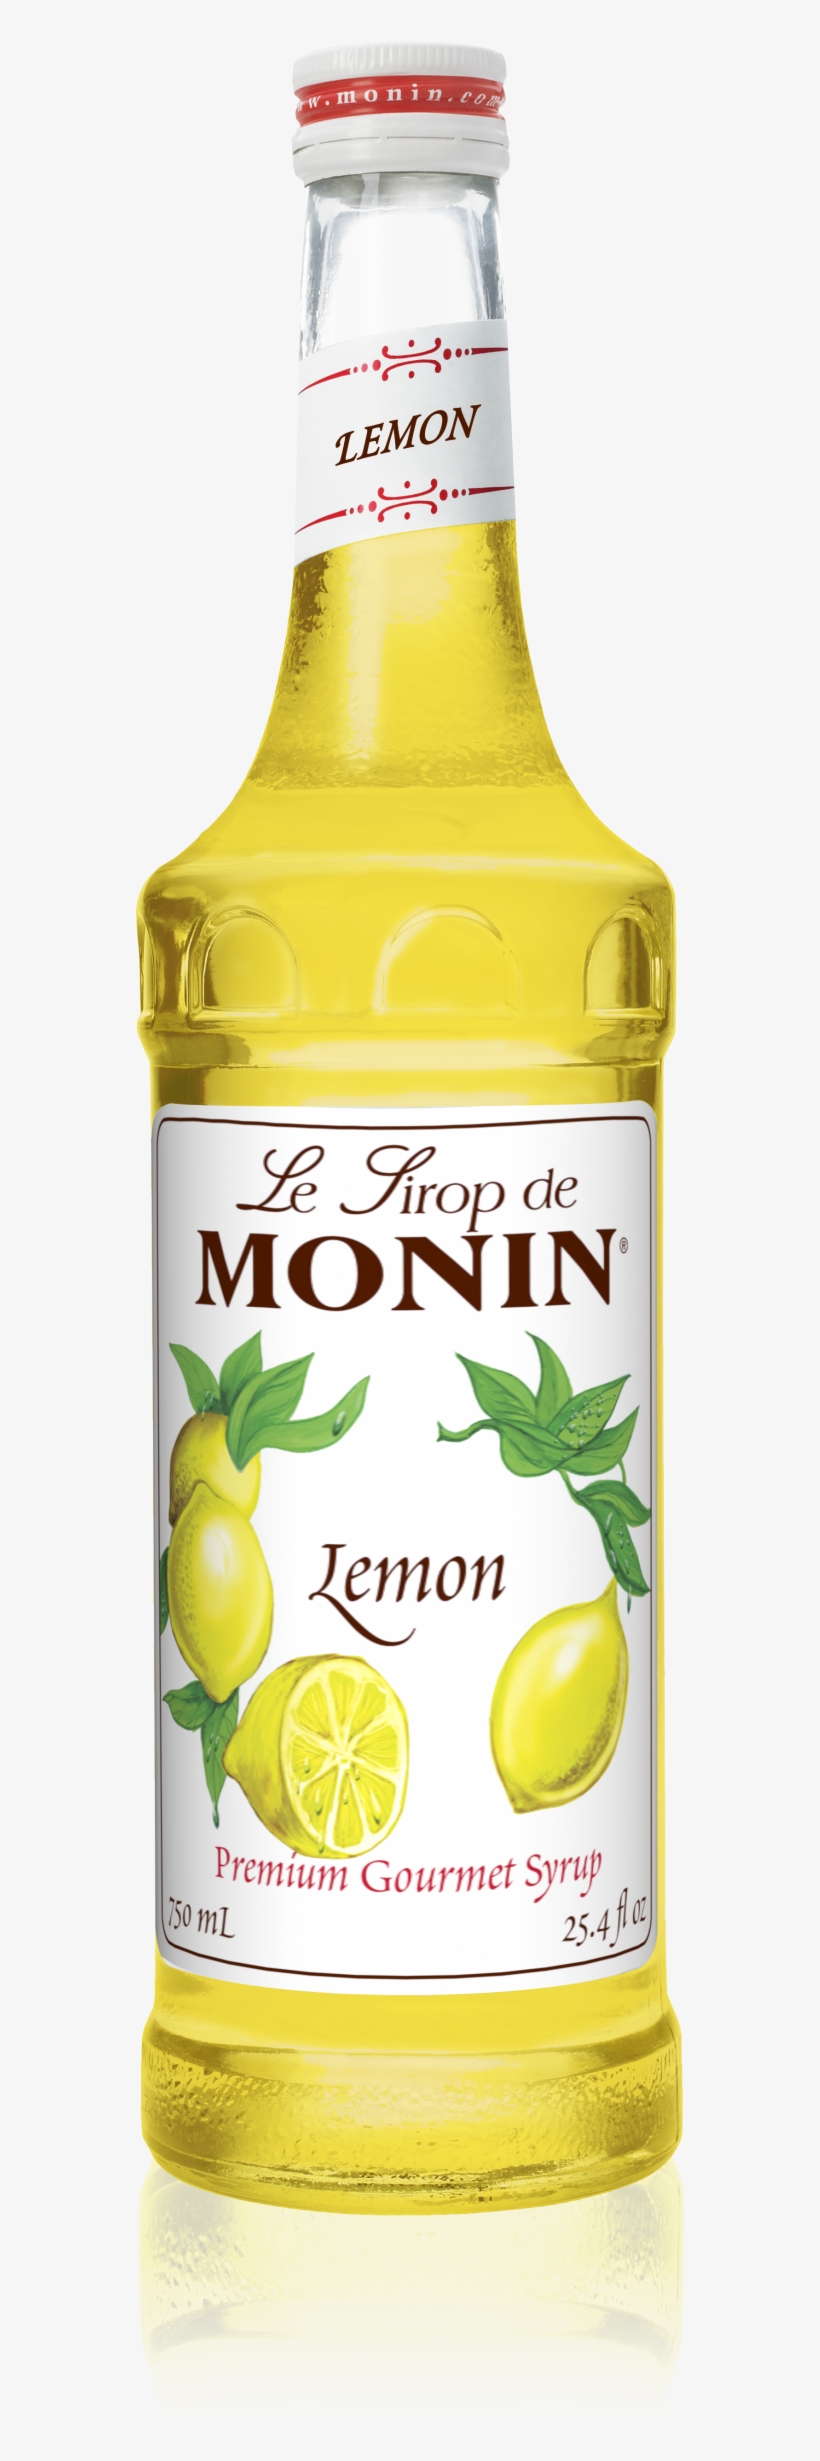 750 Ml Lemon Syrup - Monin Lime Syrup, transparent png #9105798